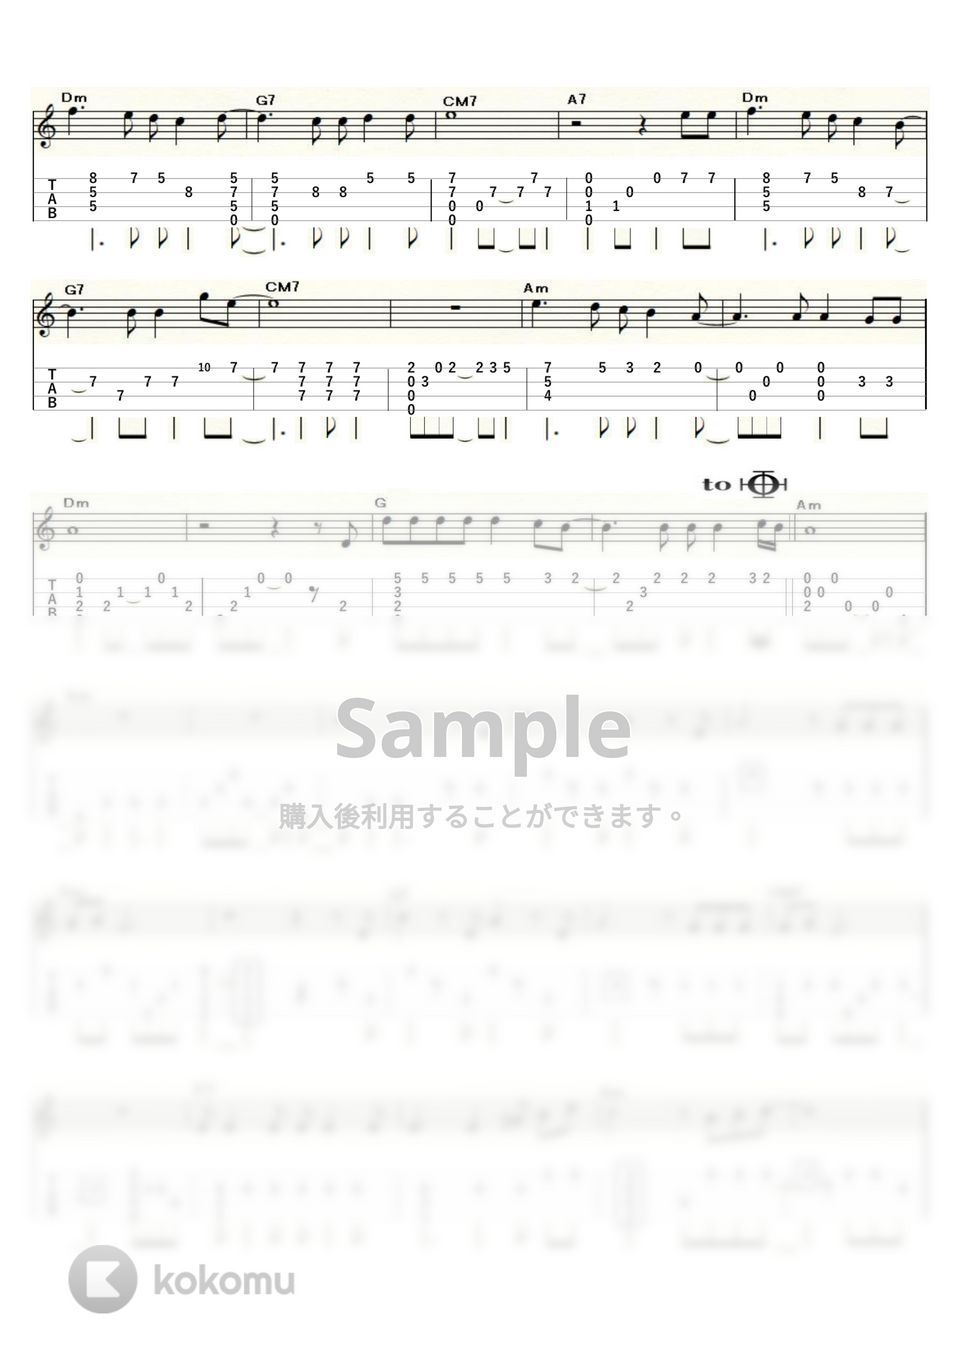 郷ひろみ - 哀愁のカサブランカ (Low-G) by ukulelepapa